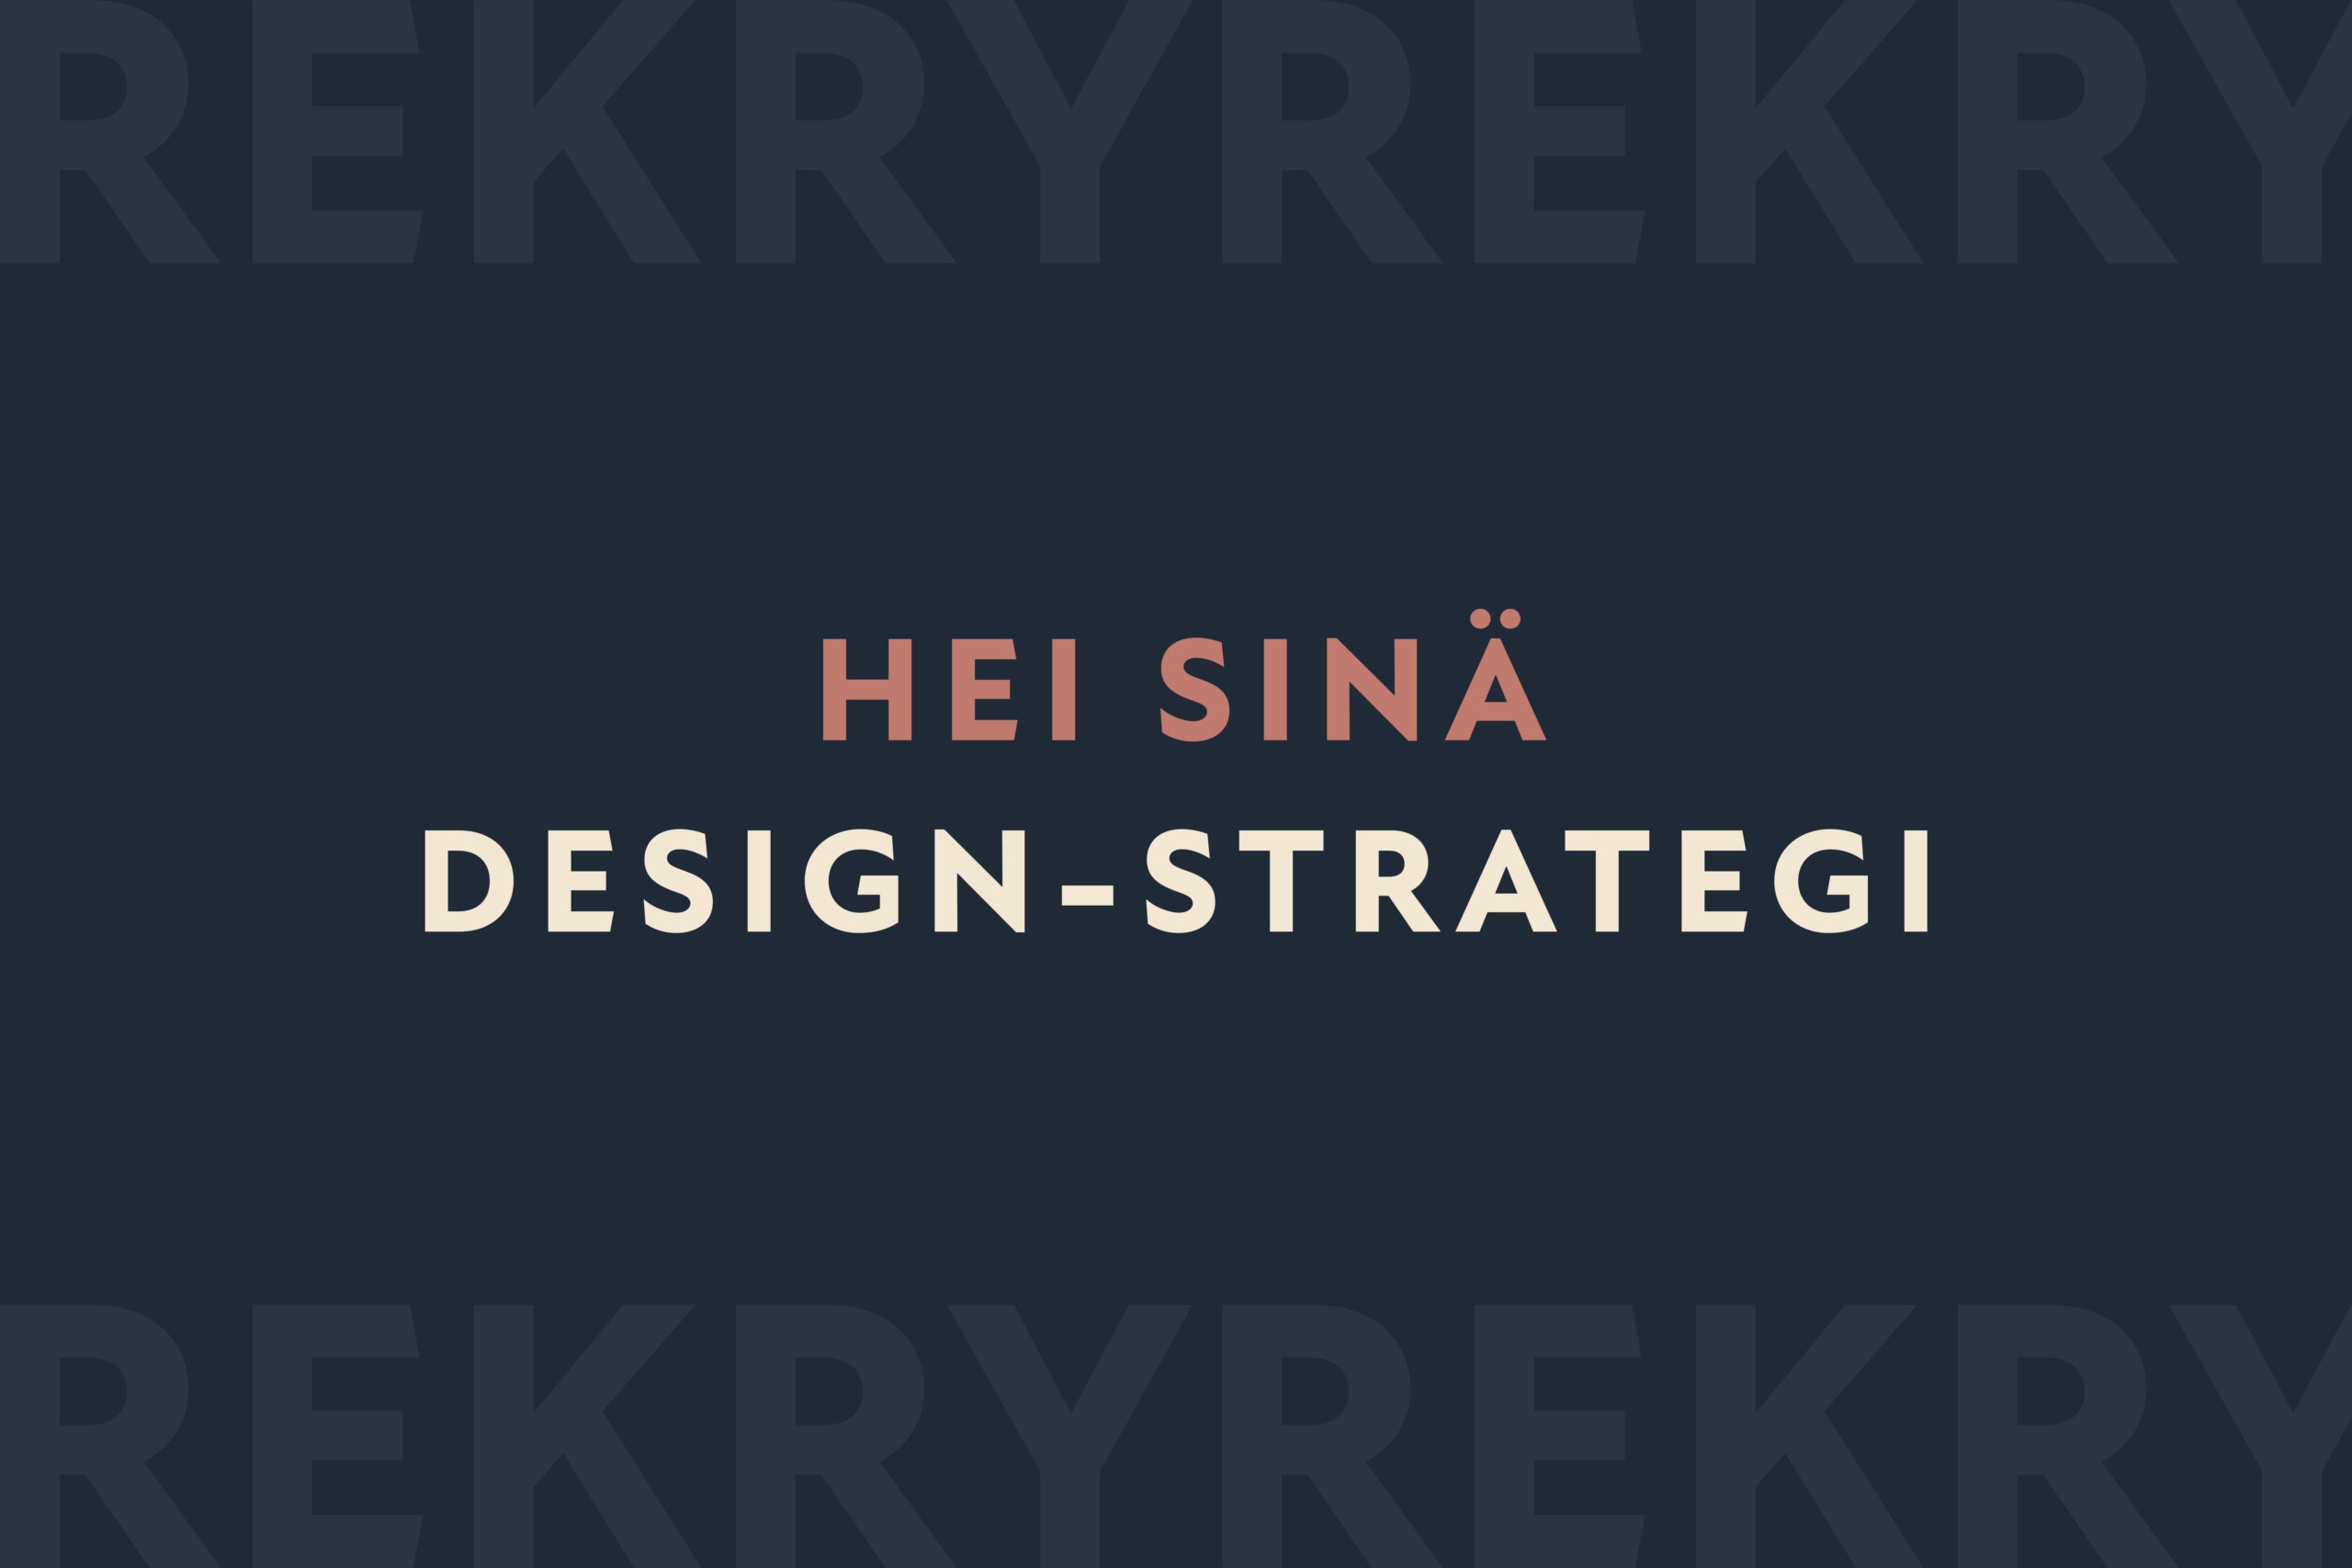 Rune & Berg Design rekrytoi design-strategia